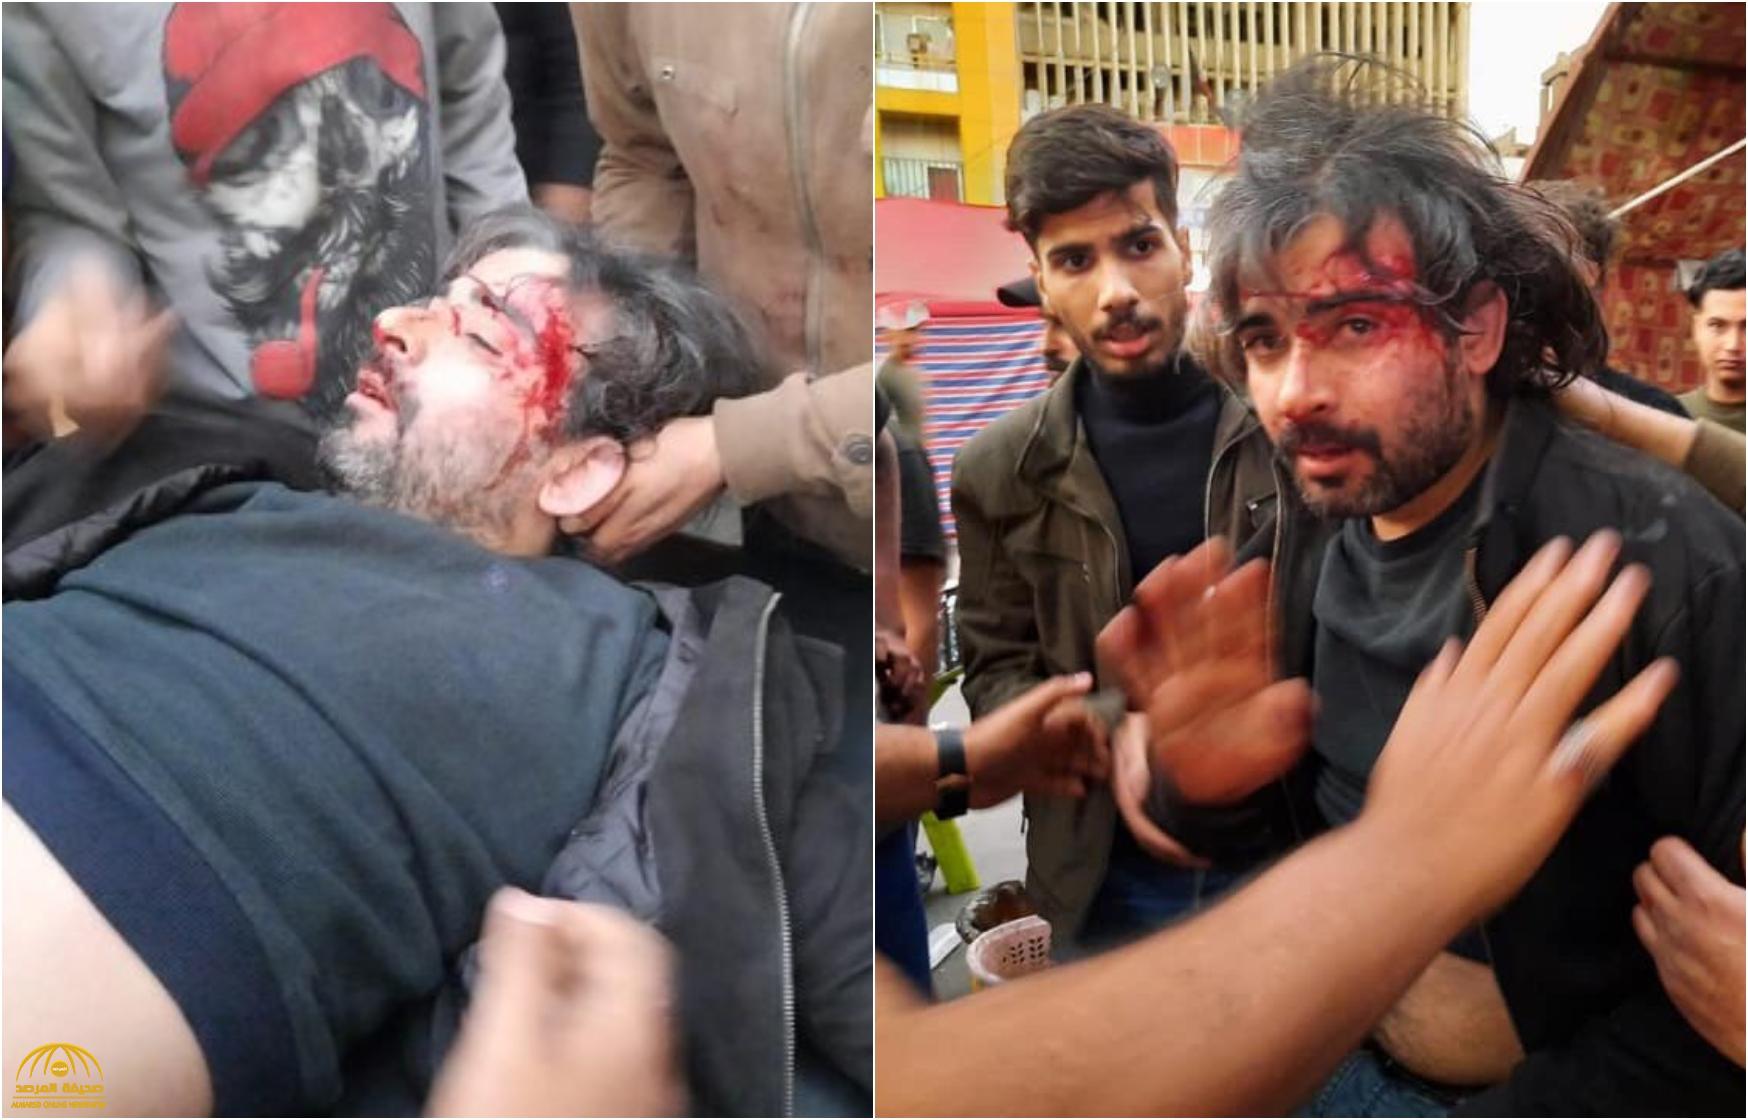 شاهد: إعلامي عراقي بارز يتعرض لهجوم عنيف بالسكاكين.. وتوأمه يتهم "جهة سياسية معروفة" – صور